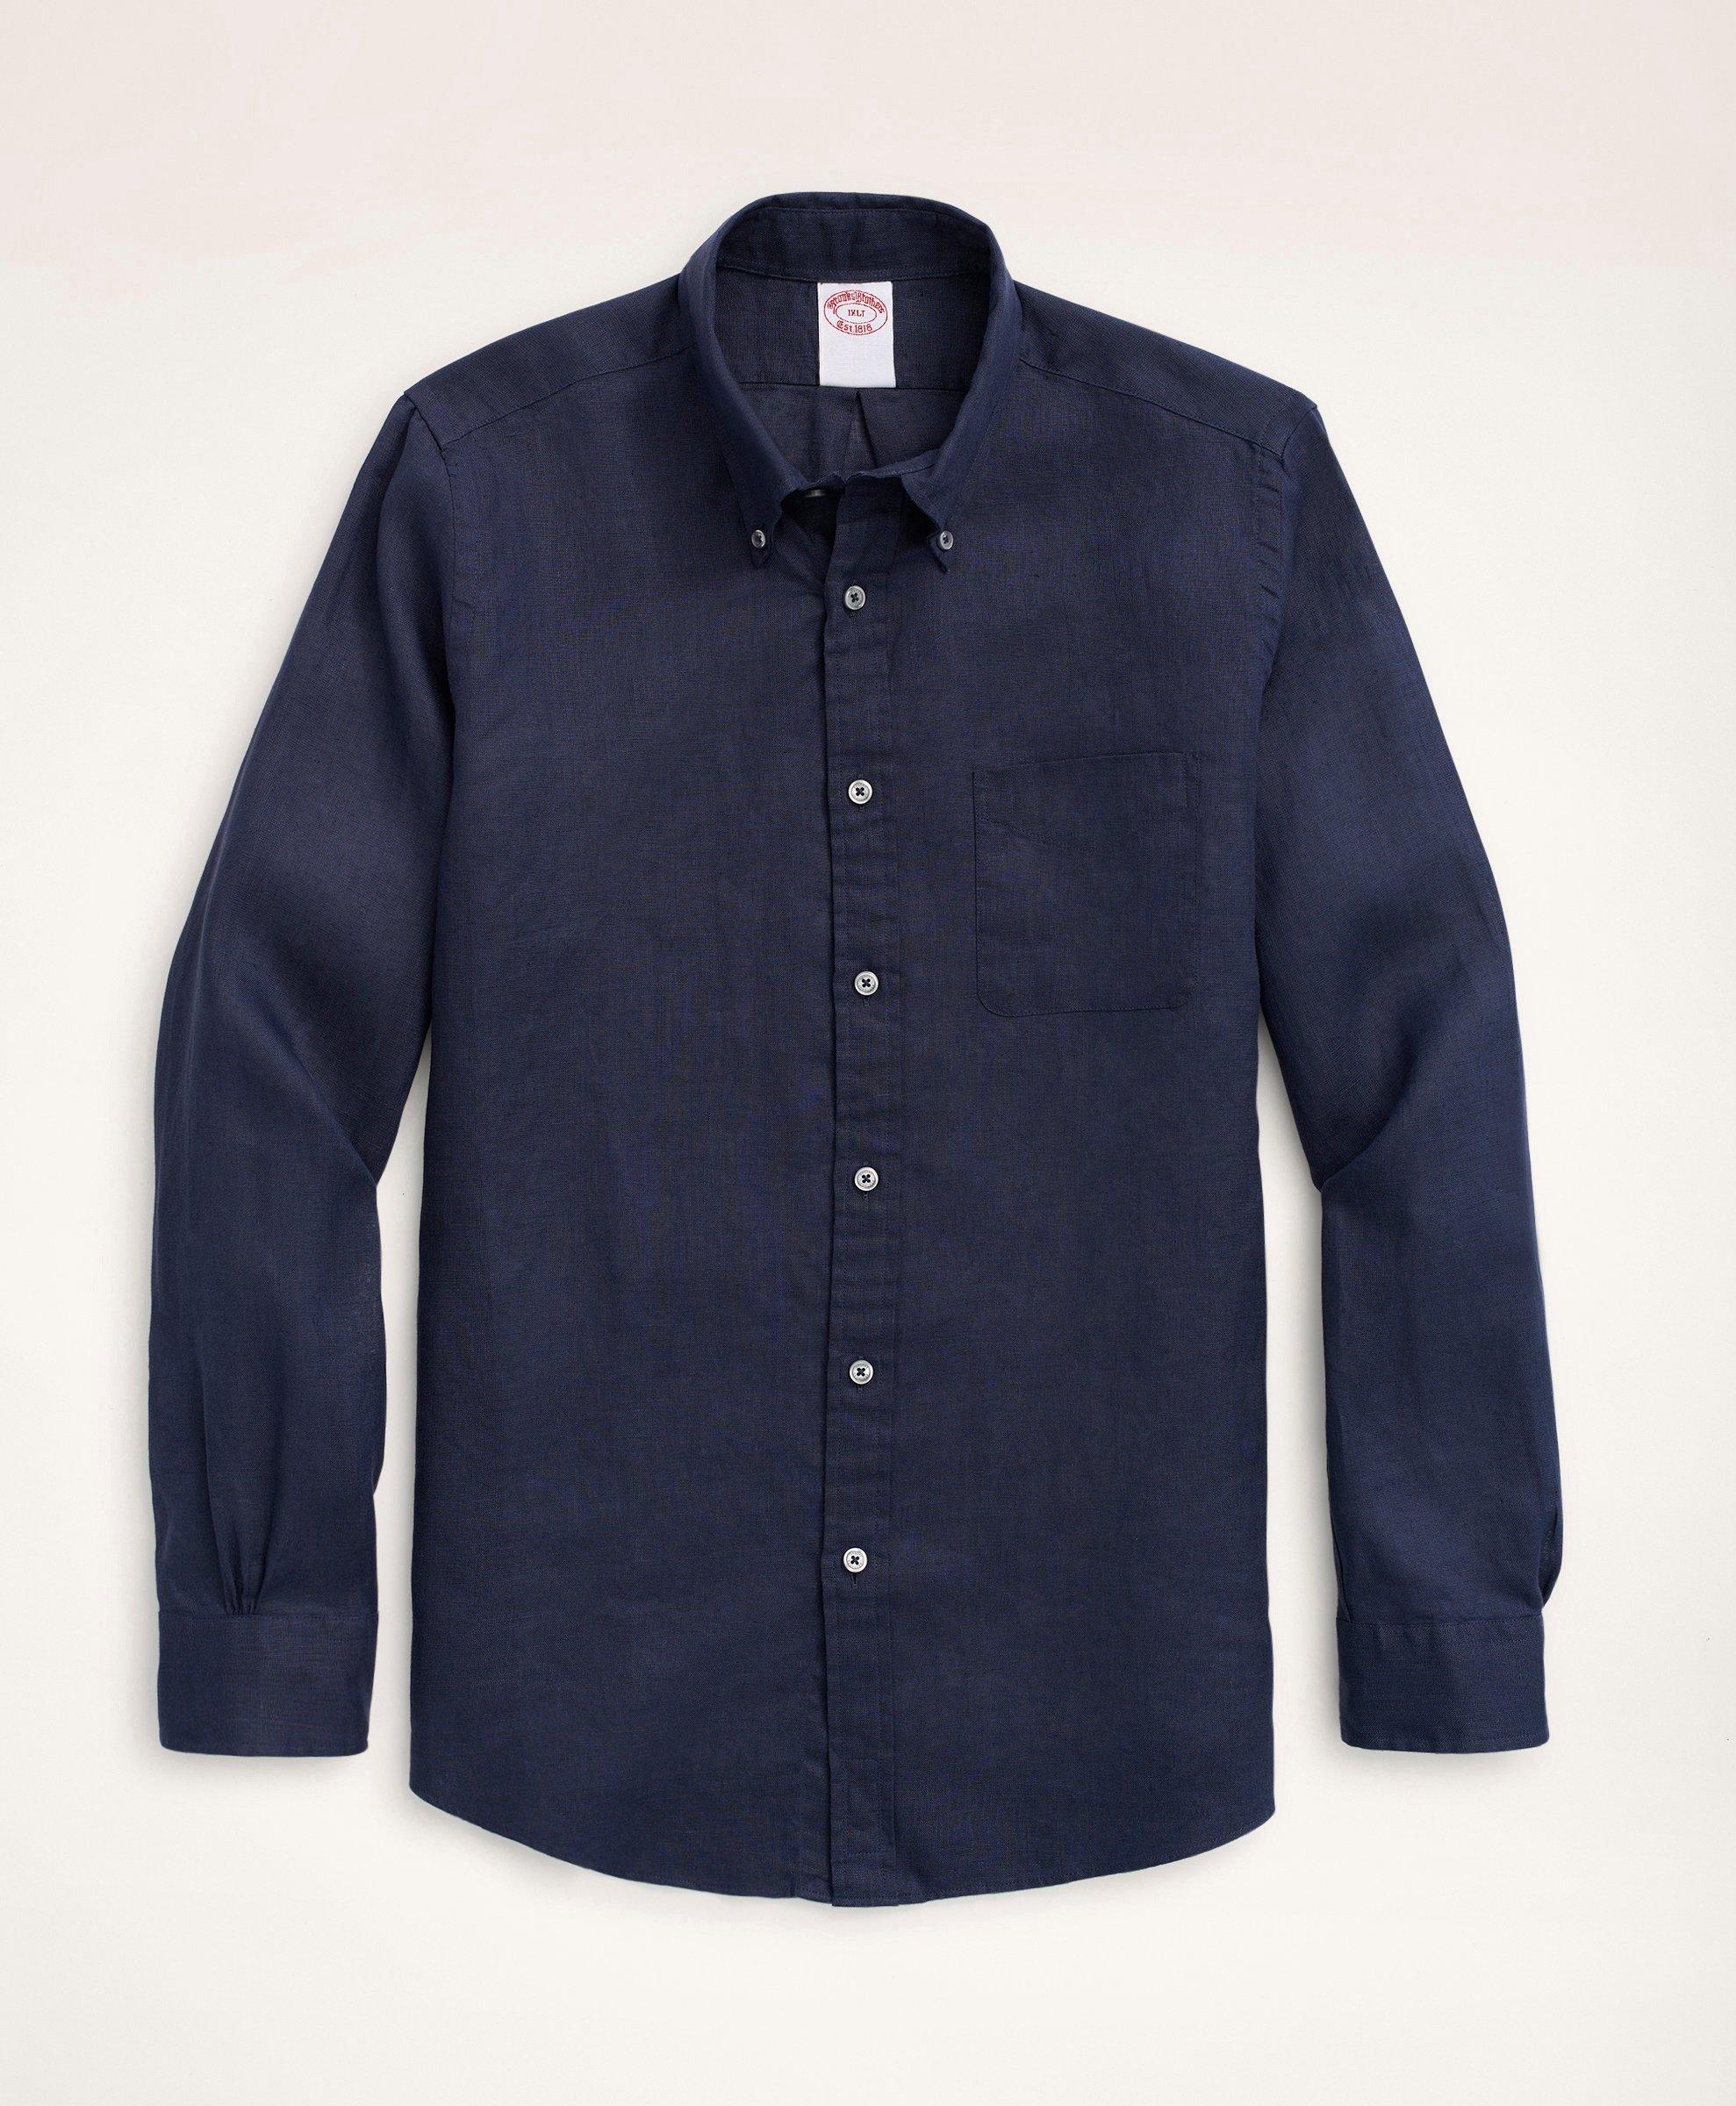 Brooks Brothers Big & Tall Sport Shirt, Irish Linen | Navy | Size 2x